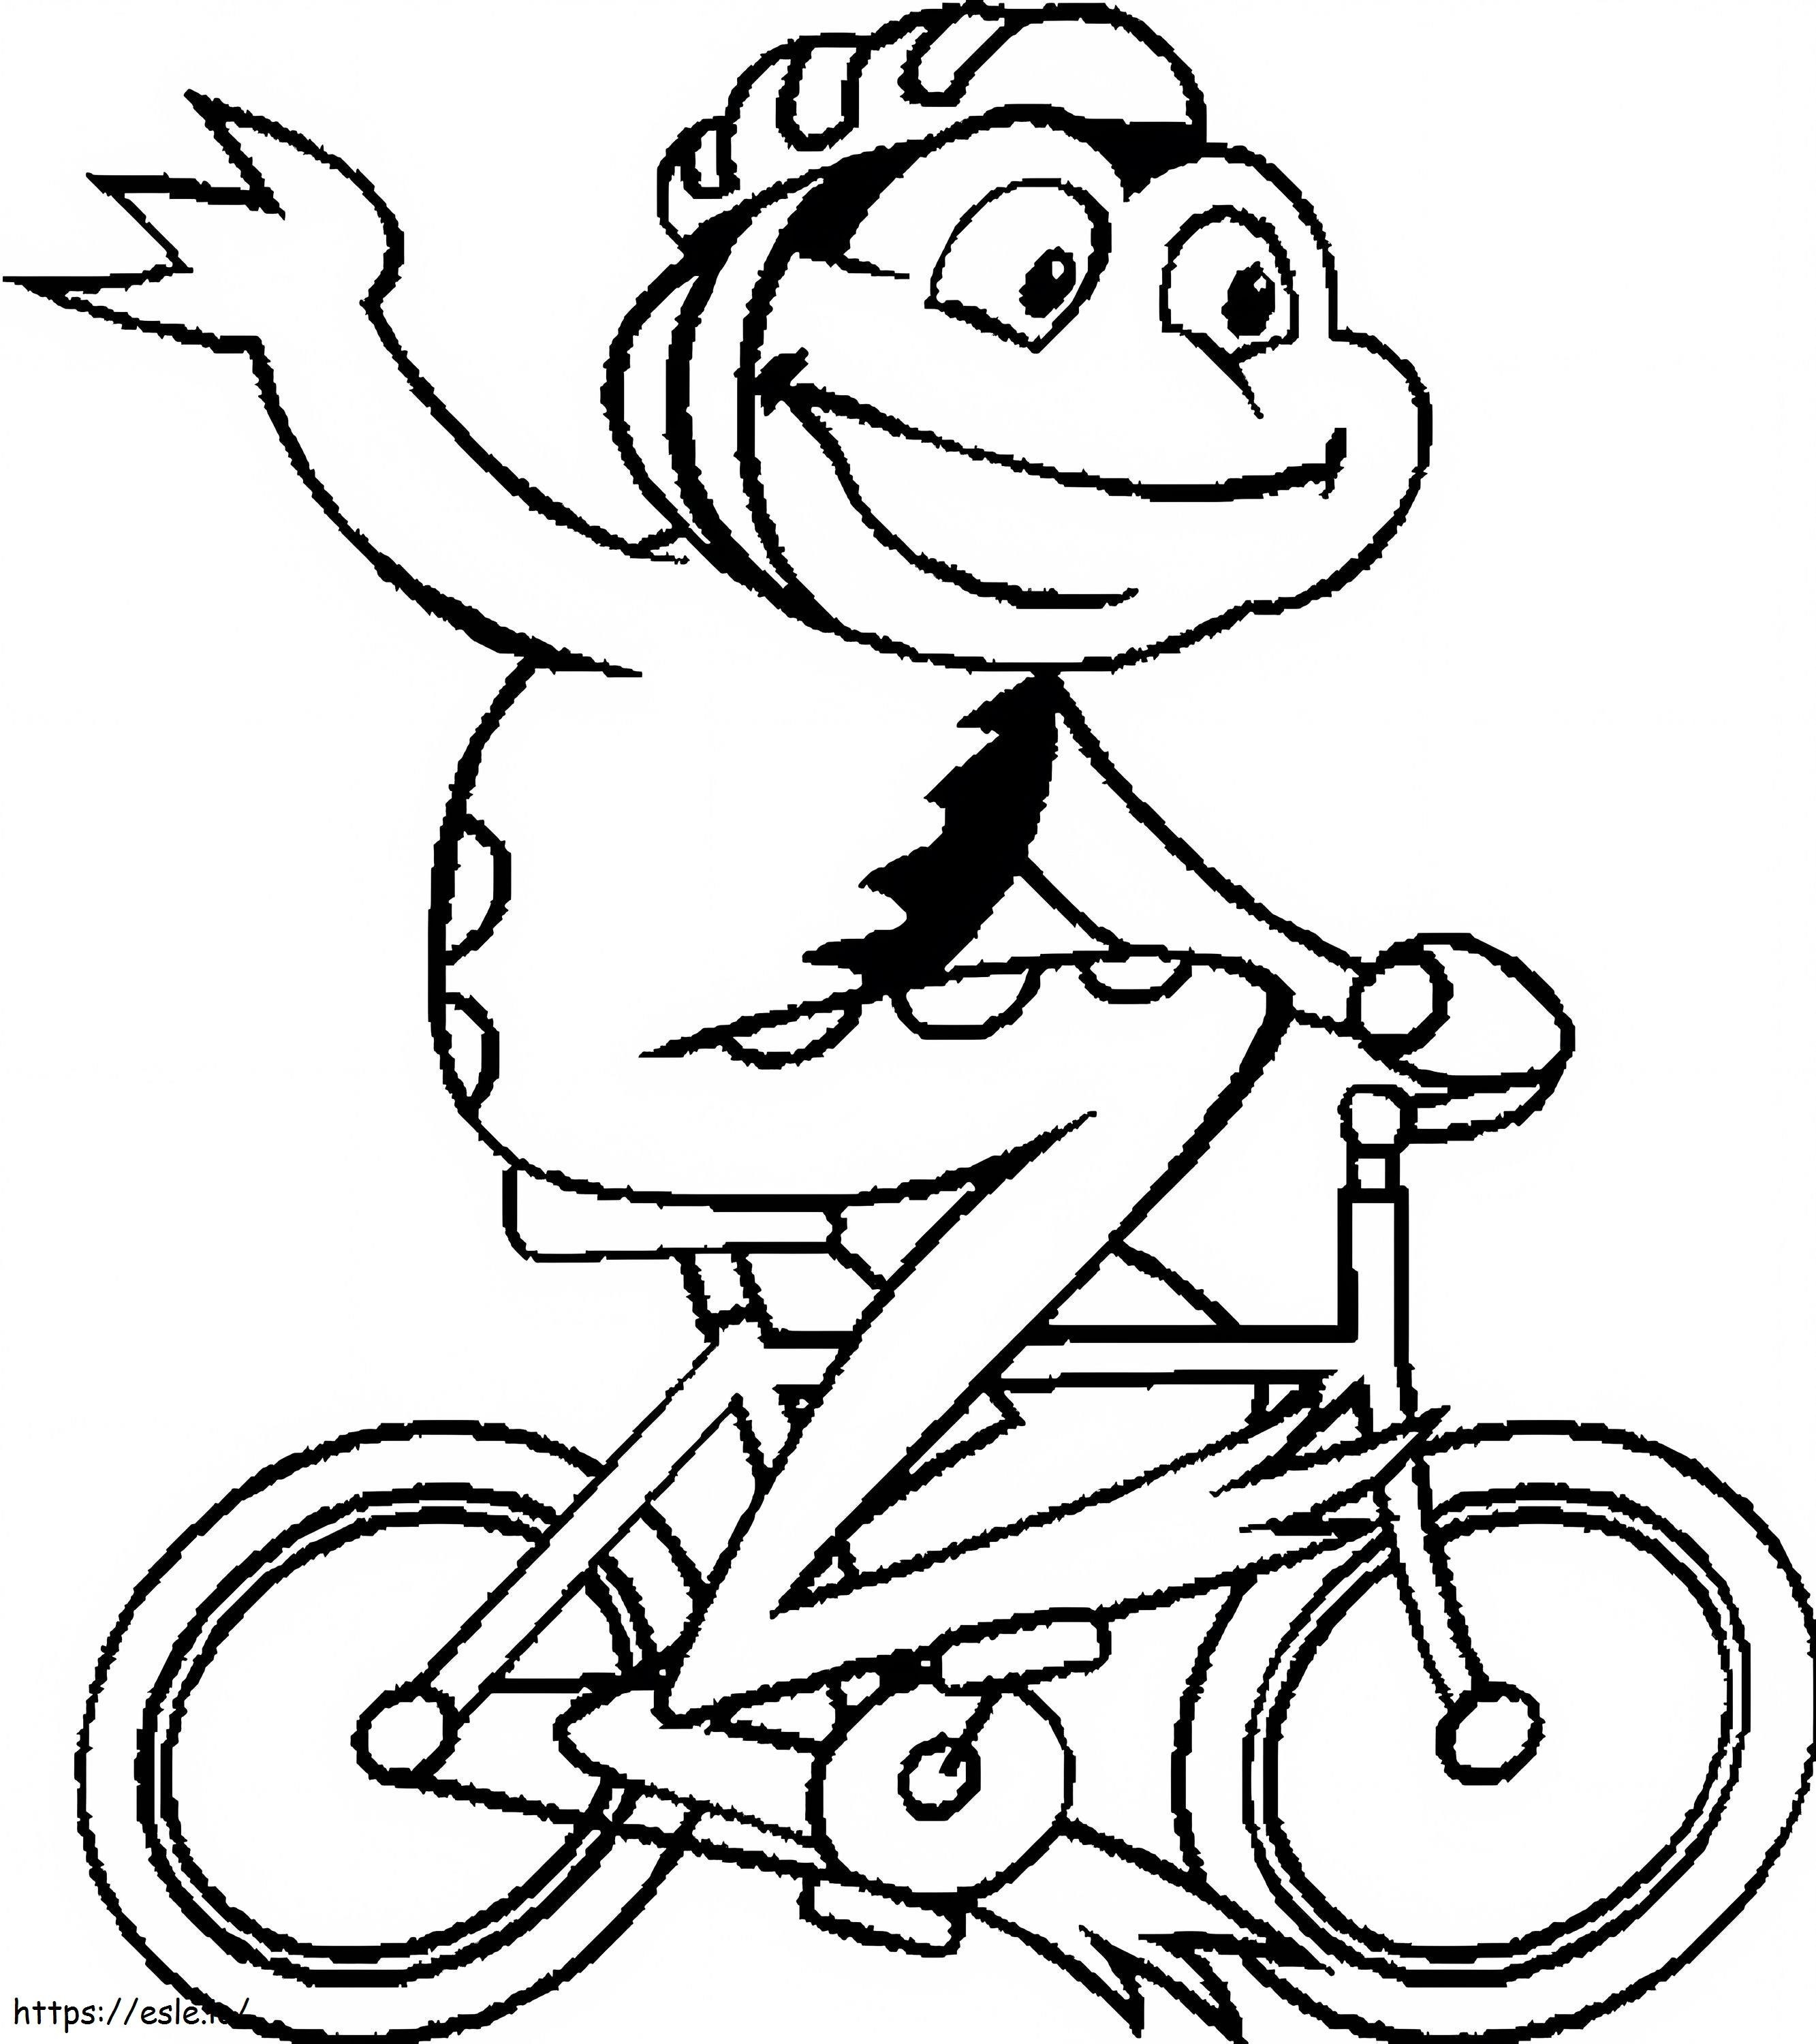 Bisikletli Kurbağa boyama